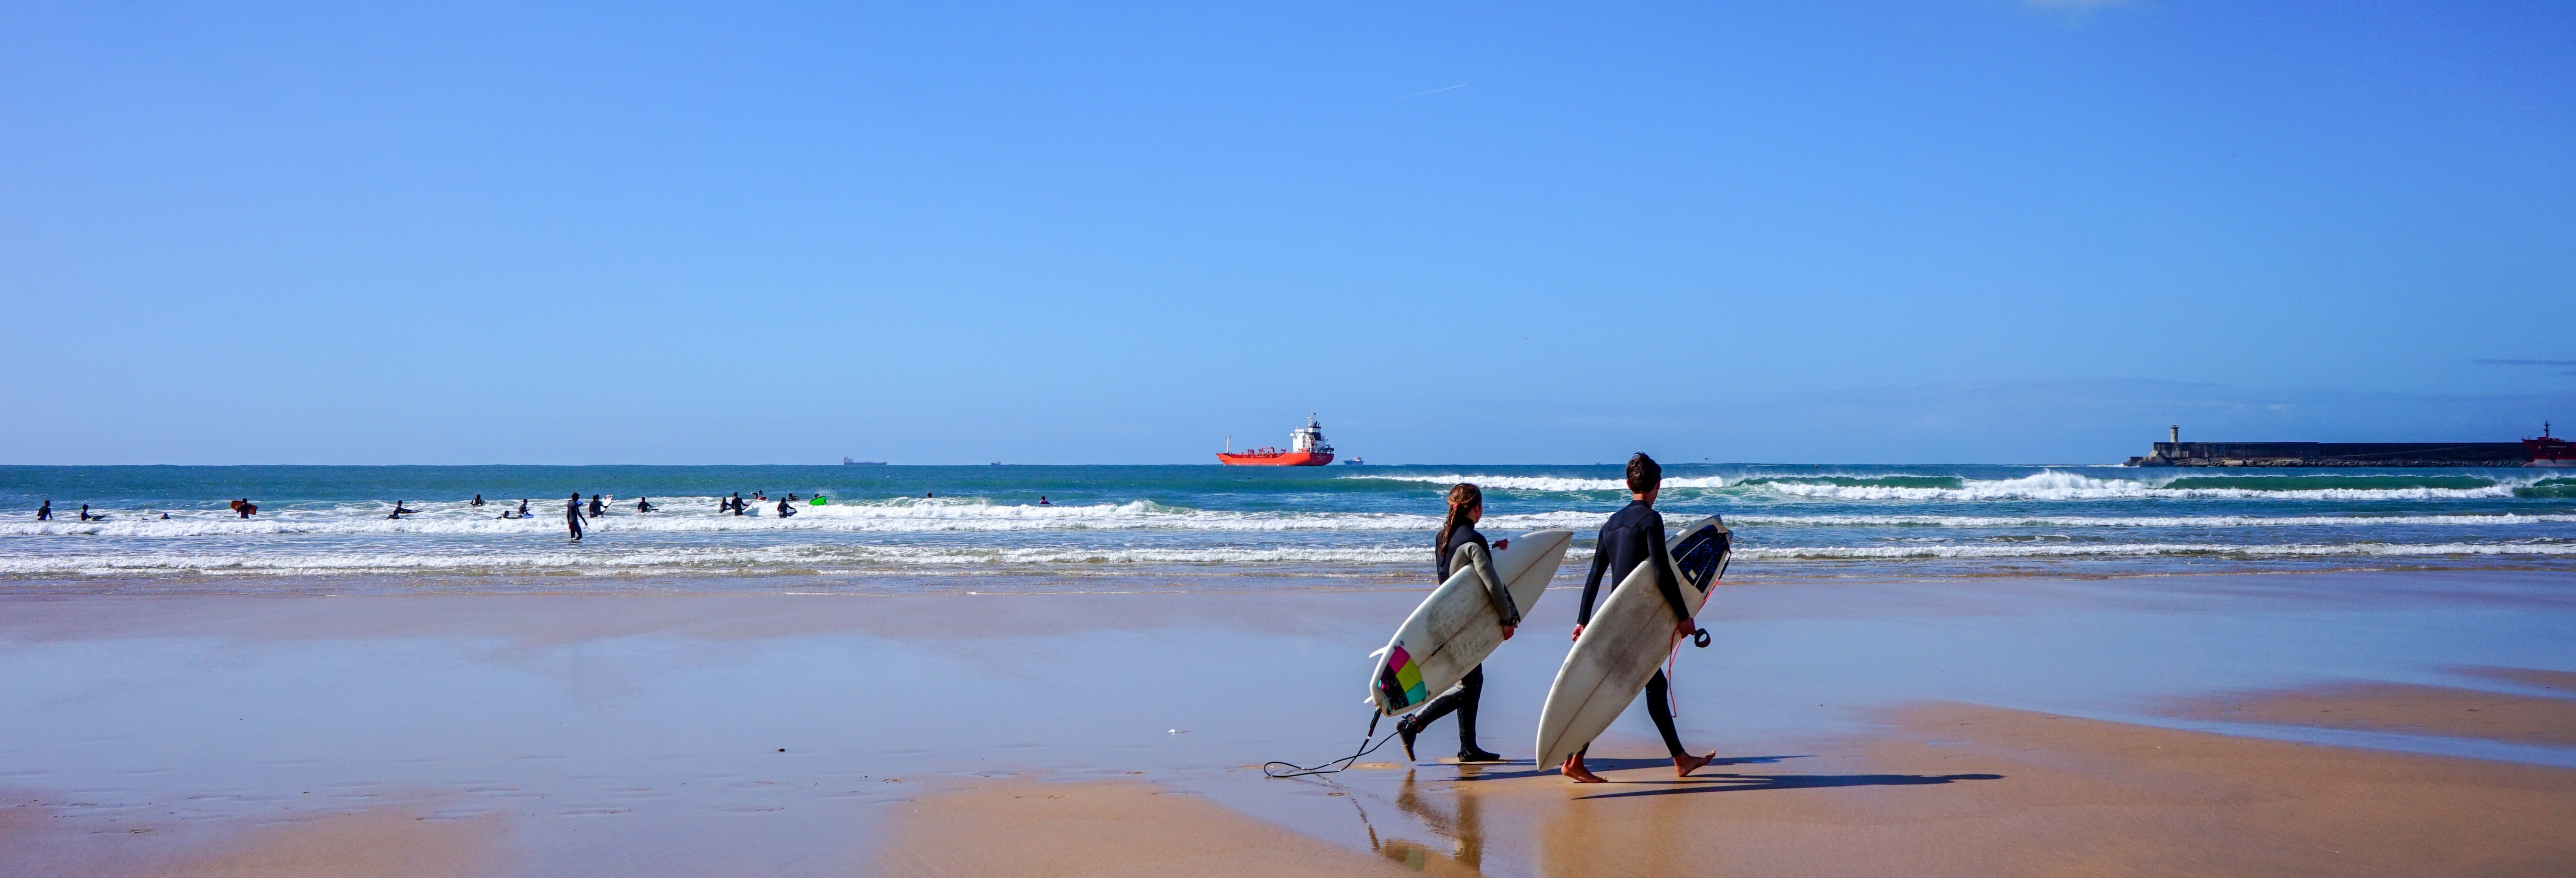 Curso de surf em Matosinhos